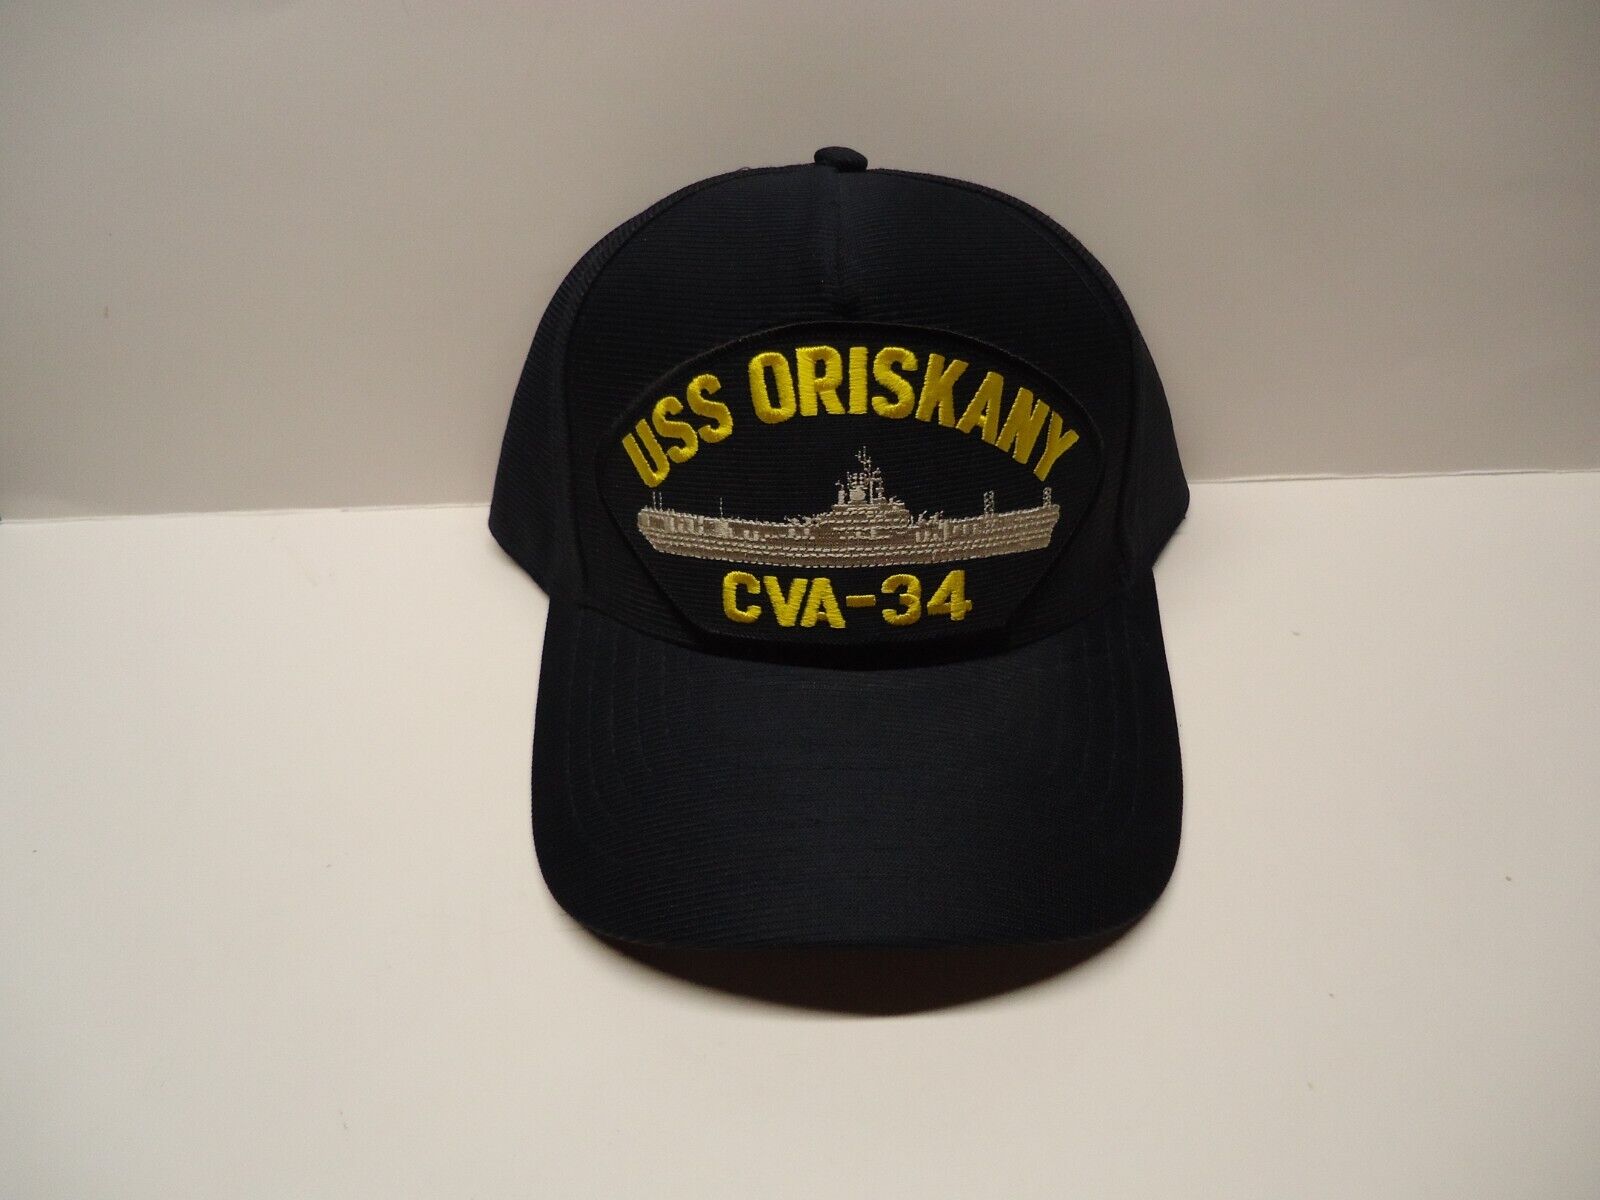 USS ORISKANY CVA-34 ball cap. Made in the USA